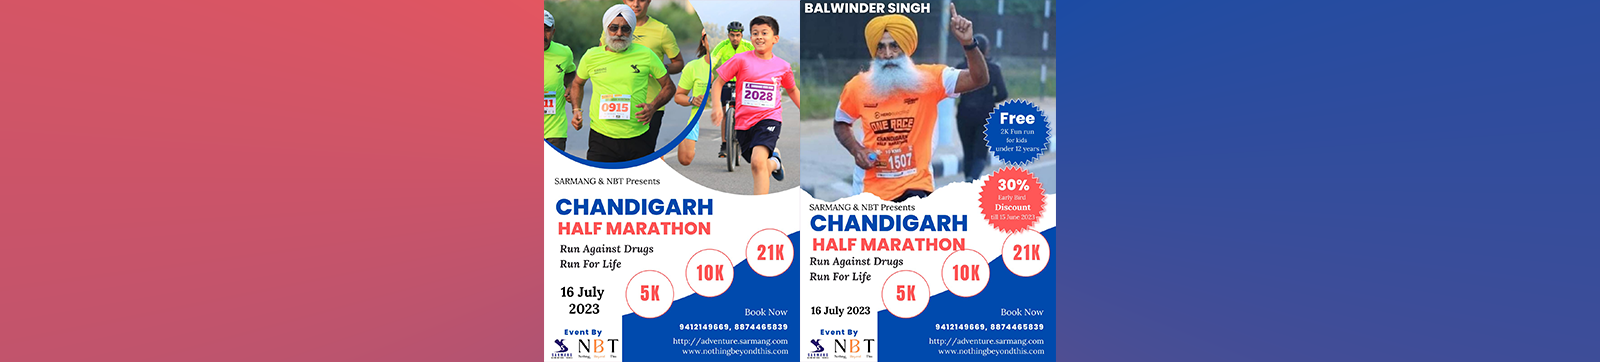 Get Ready for Chandigarh Half Marathon 2023 on July 16